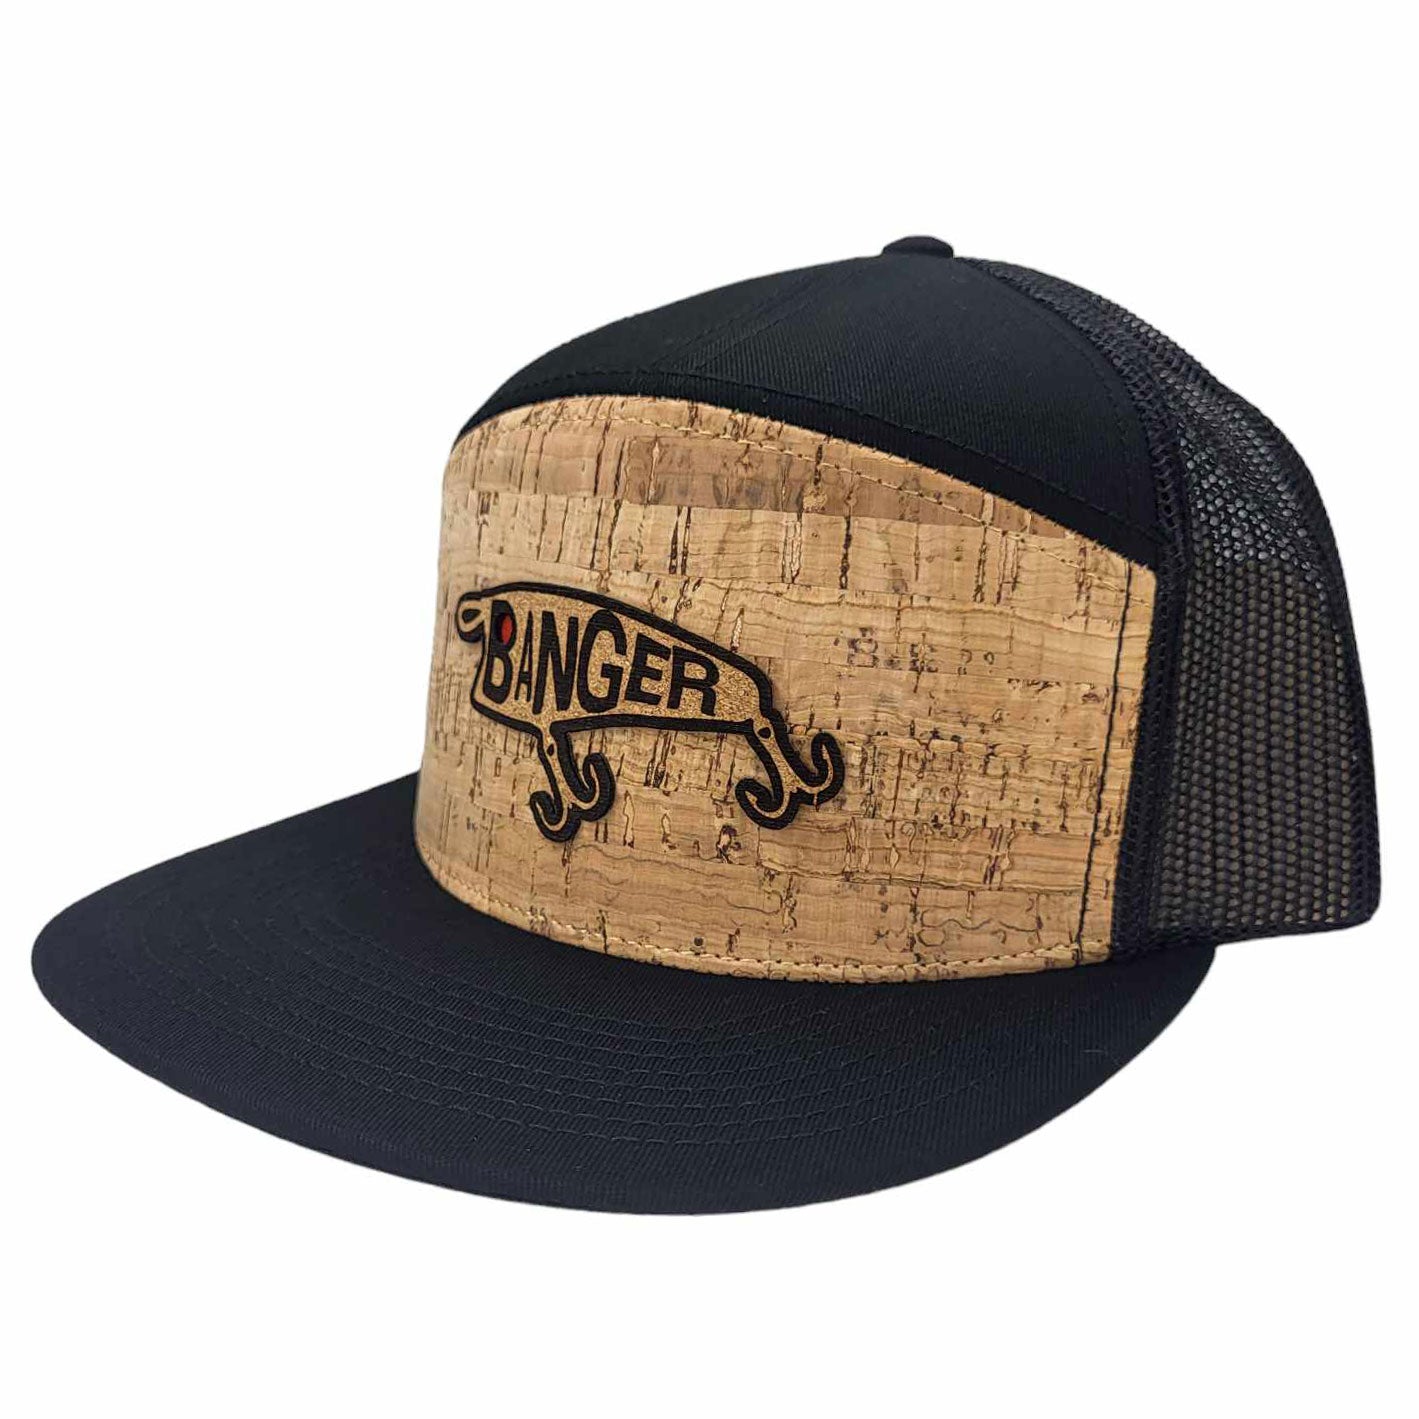 Banger Fishing Cork Hat